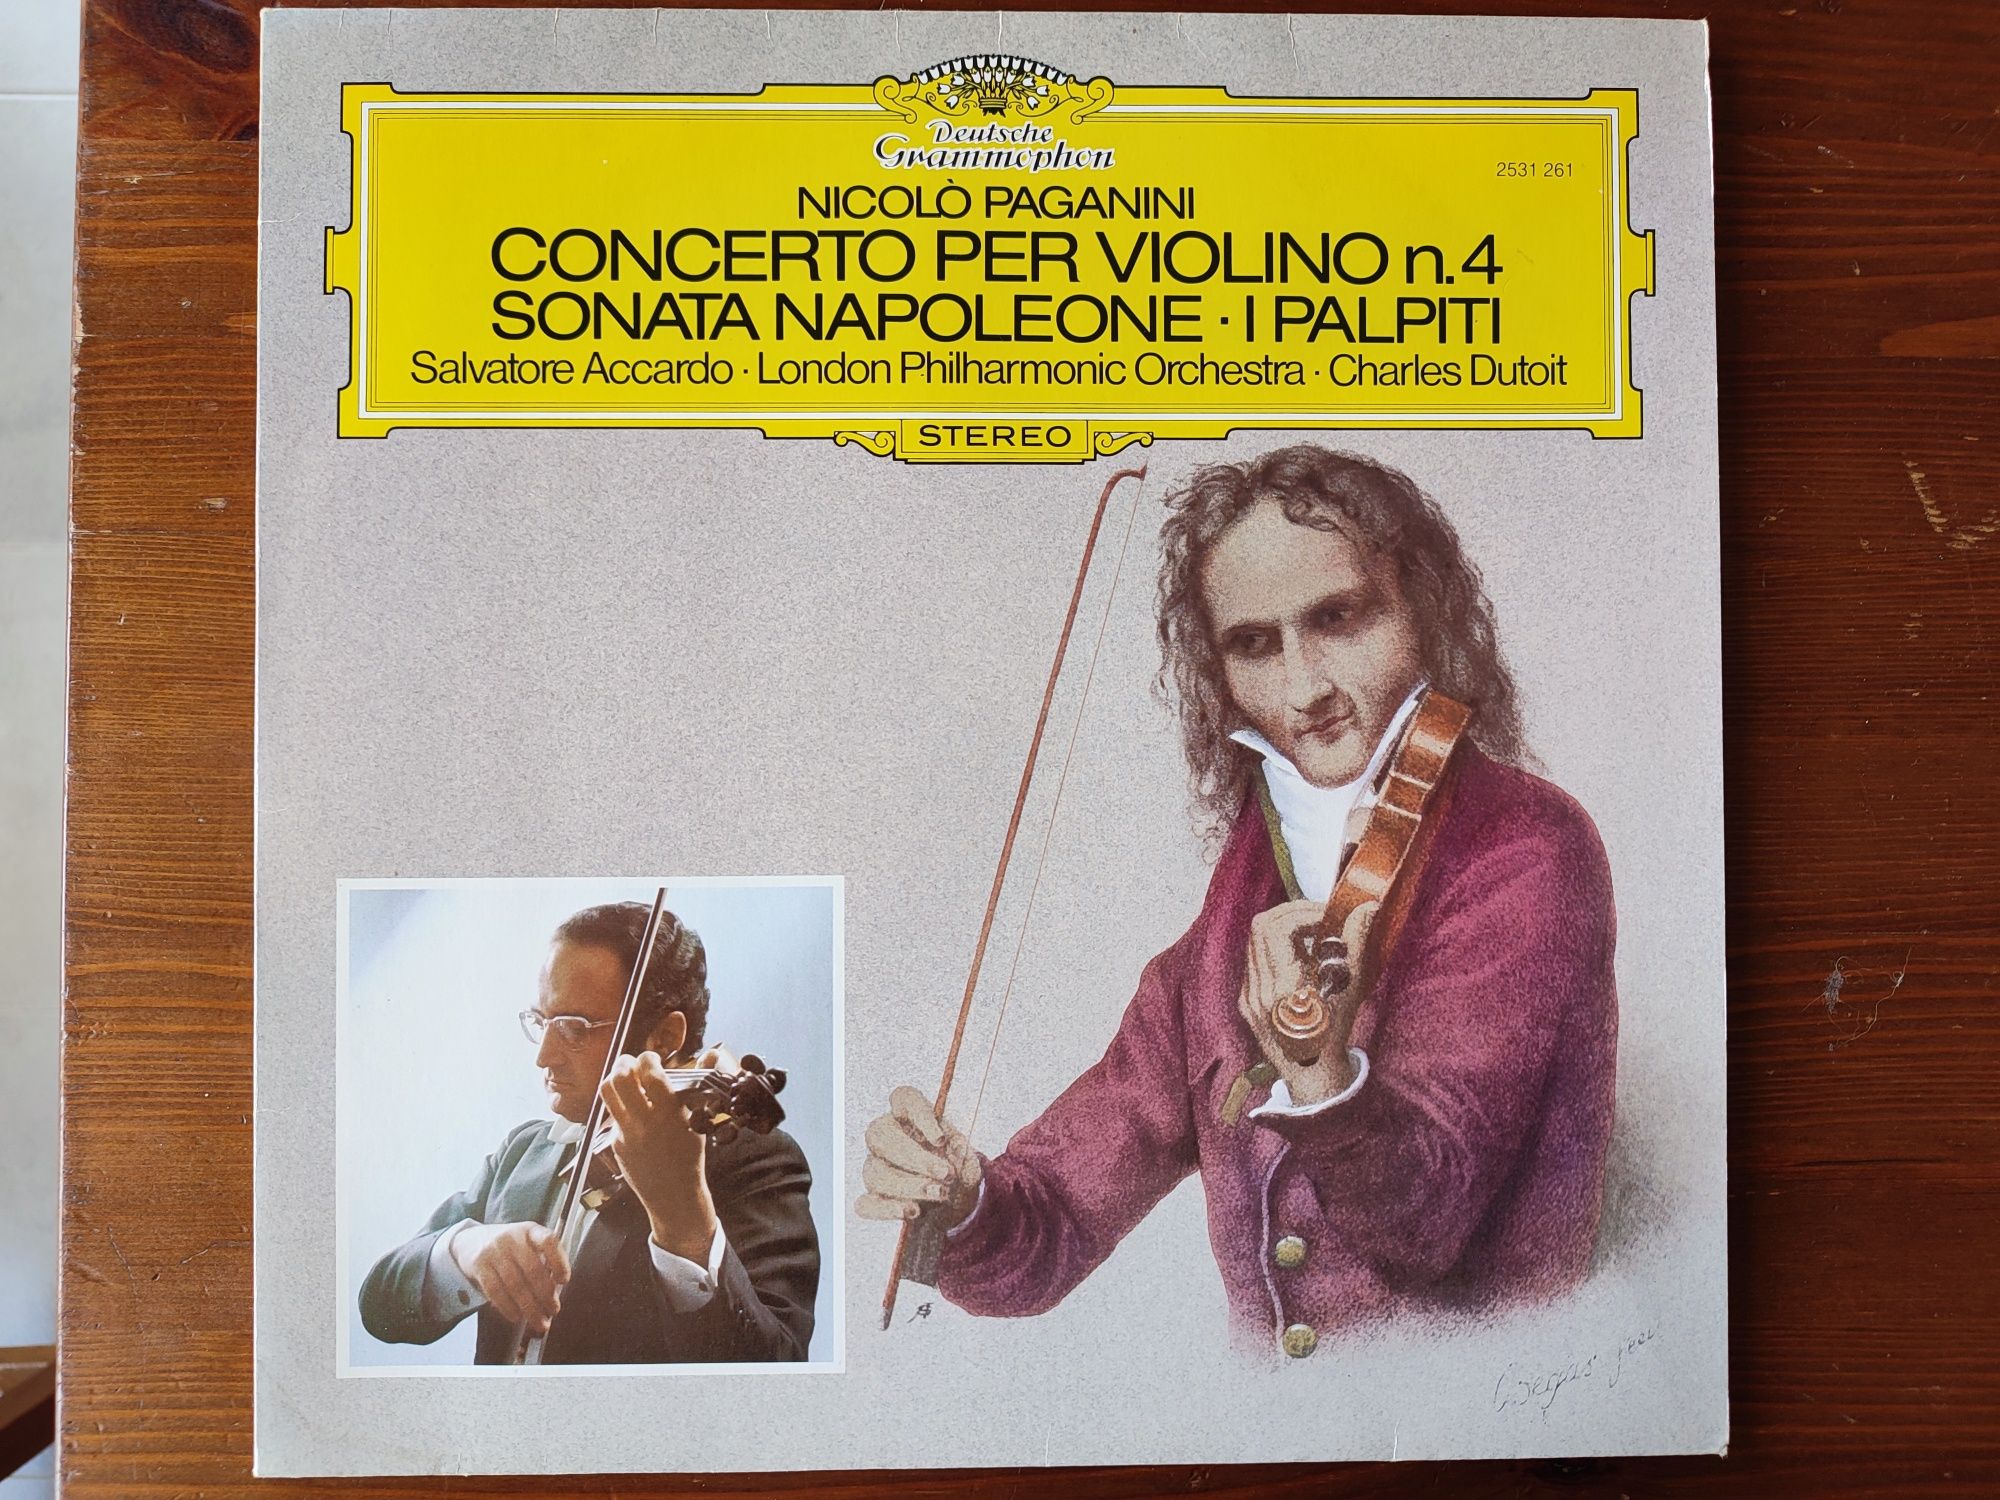 Vinil Deutsche Grammophon 1980 Álbuns Música Clássica